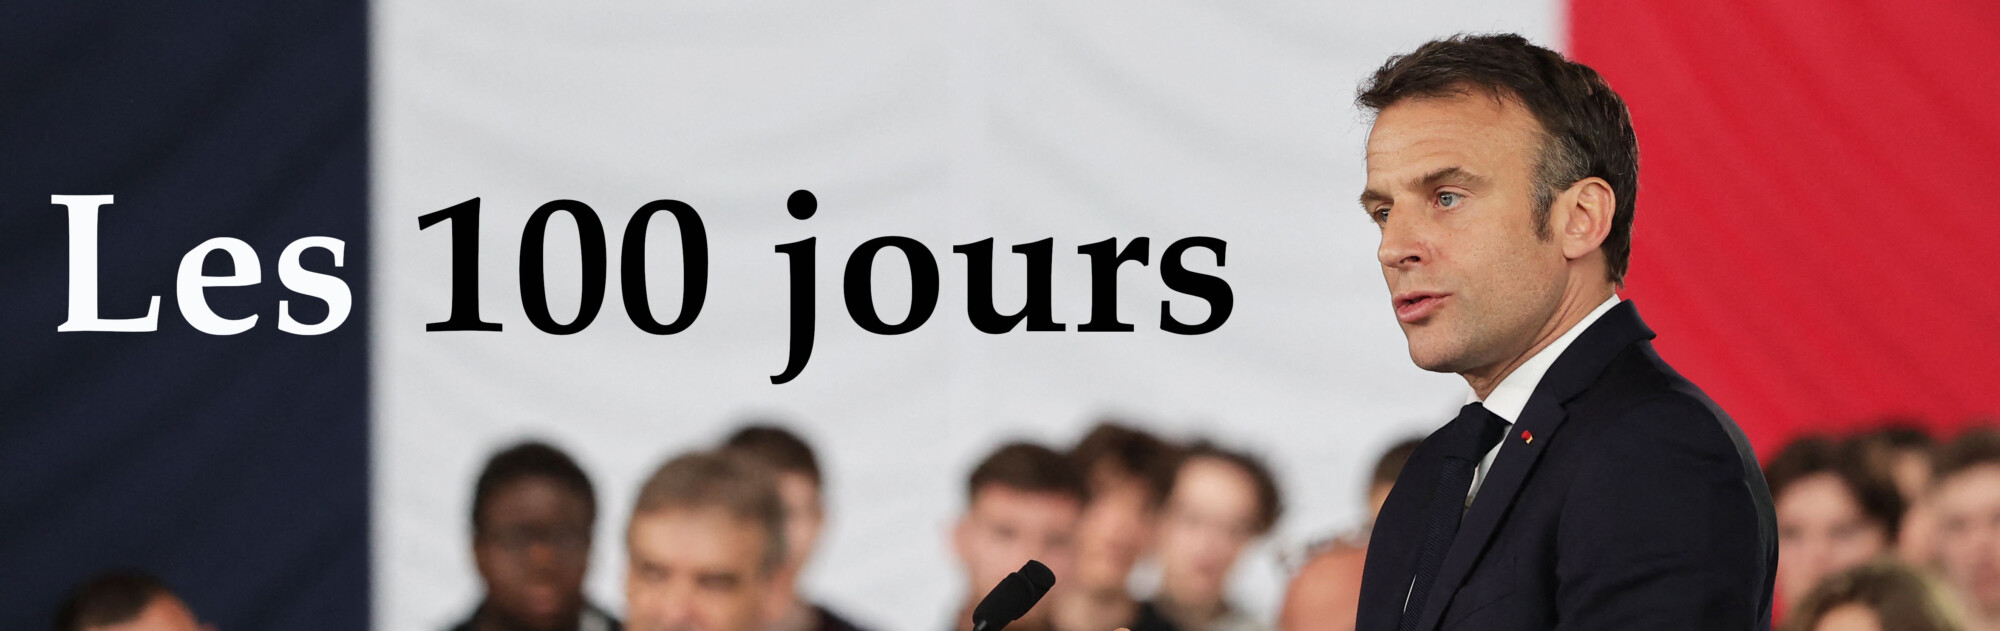 Macron: les 100 jours